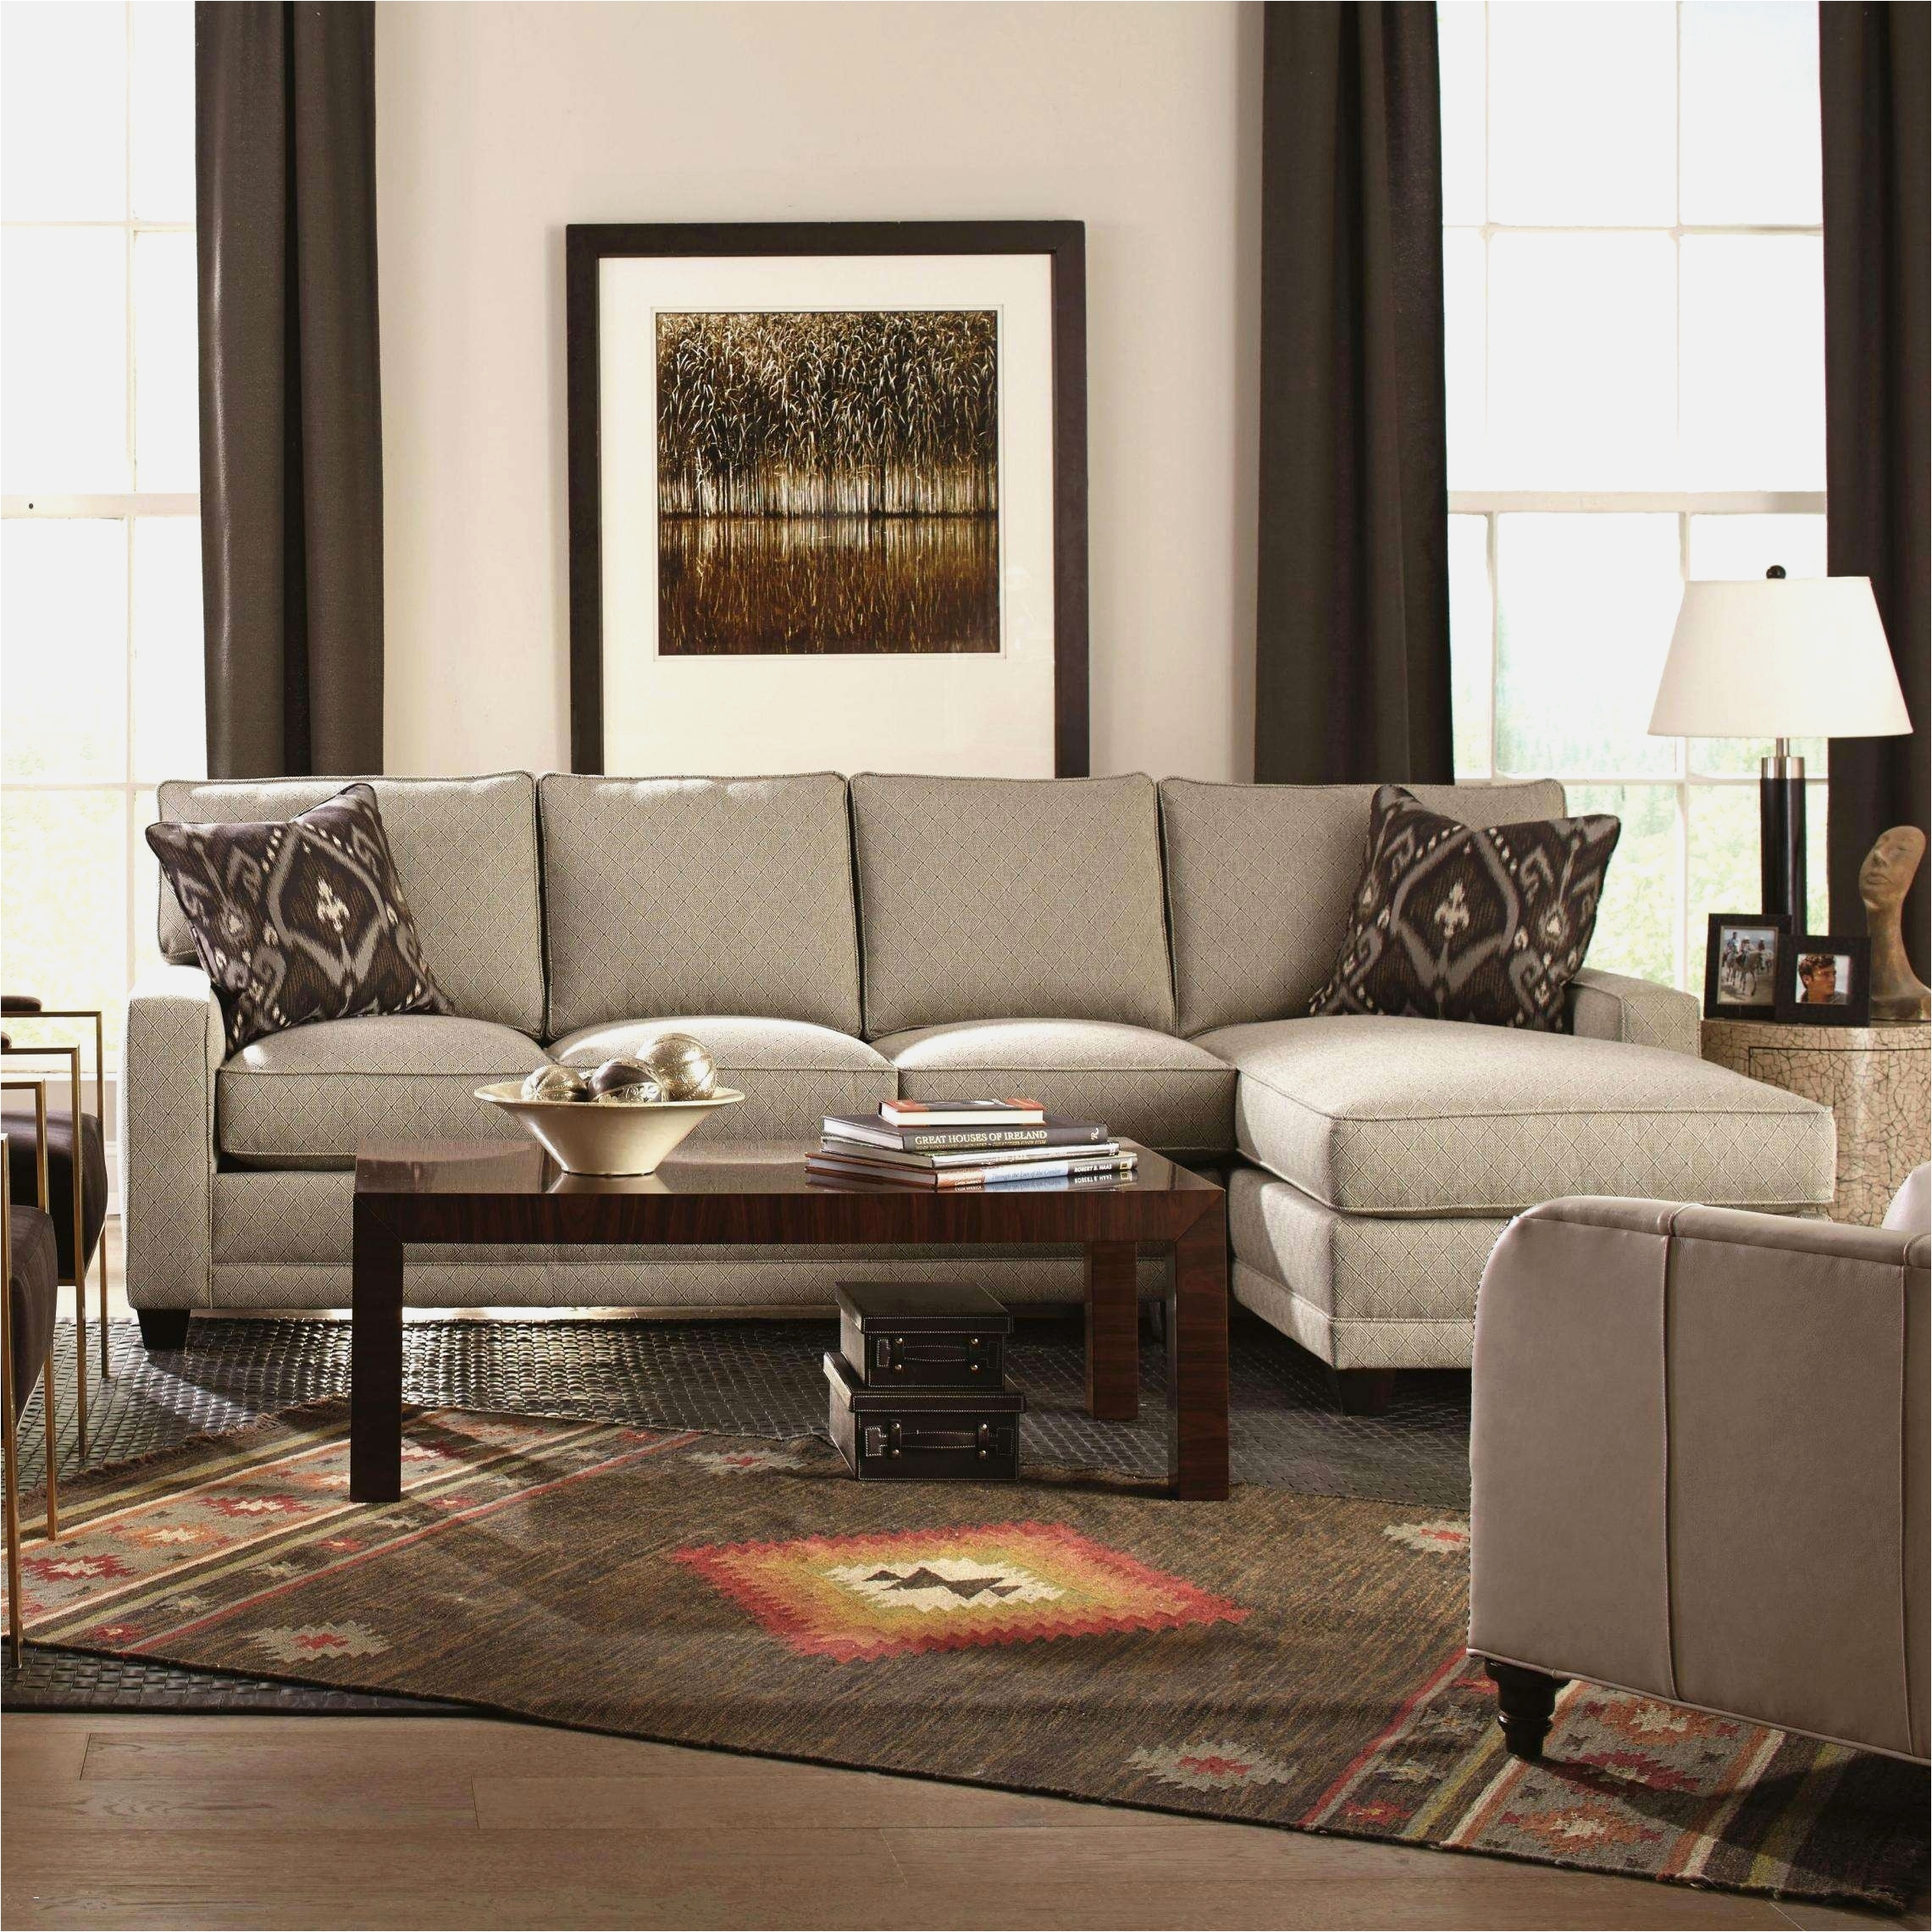 nebraska furniture mart dresser new 51 elegant nebraska furniture mart living room sets pictures of nebraska